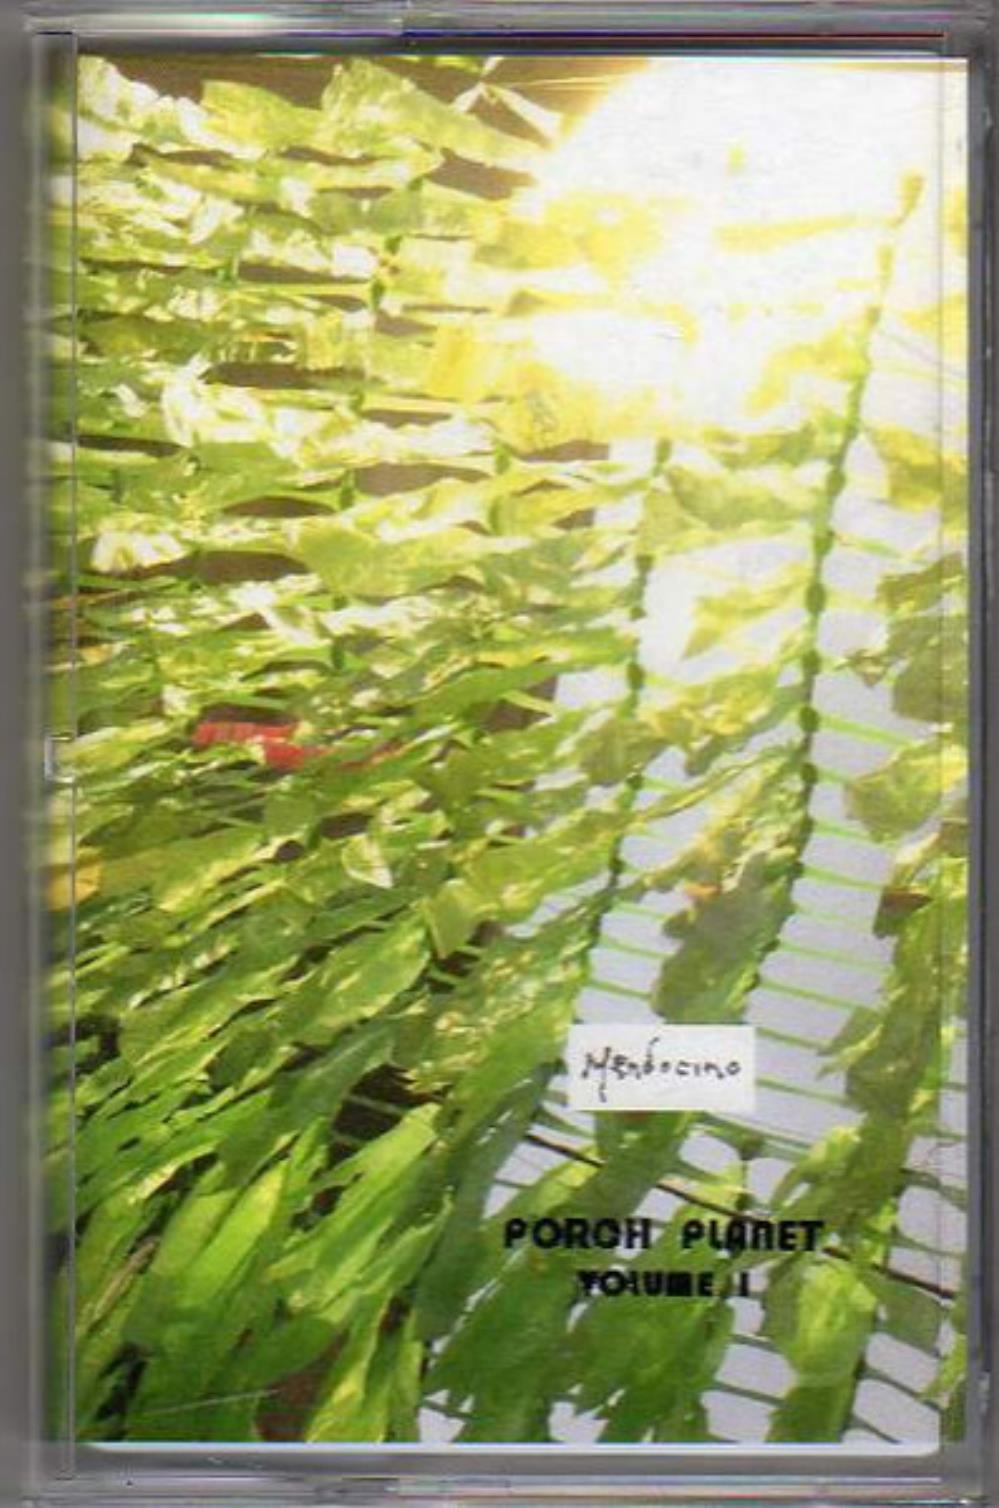 Mendocino - Porch Planet Volume 1 CD (album) cover